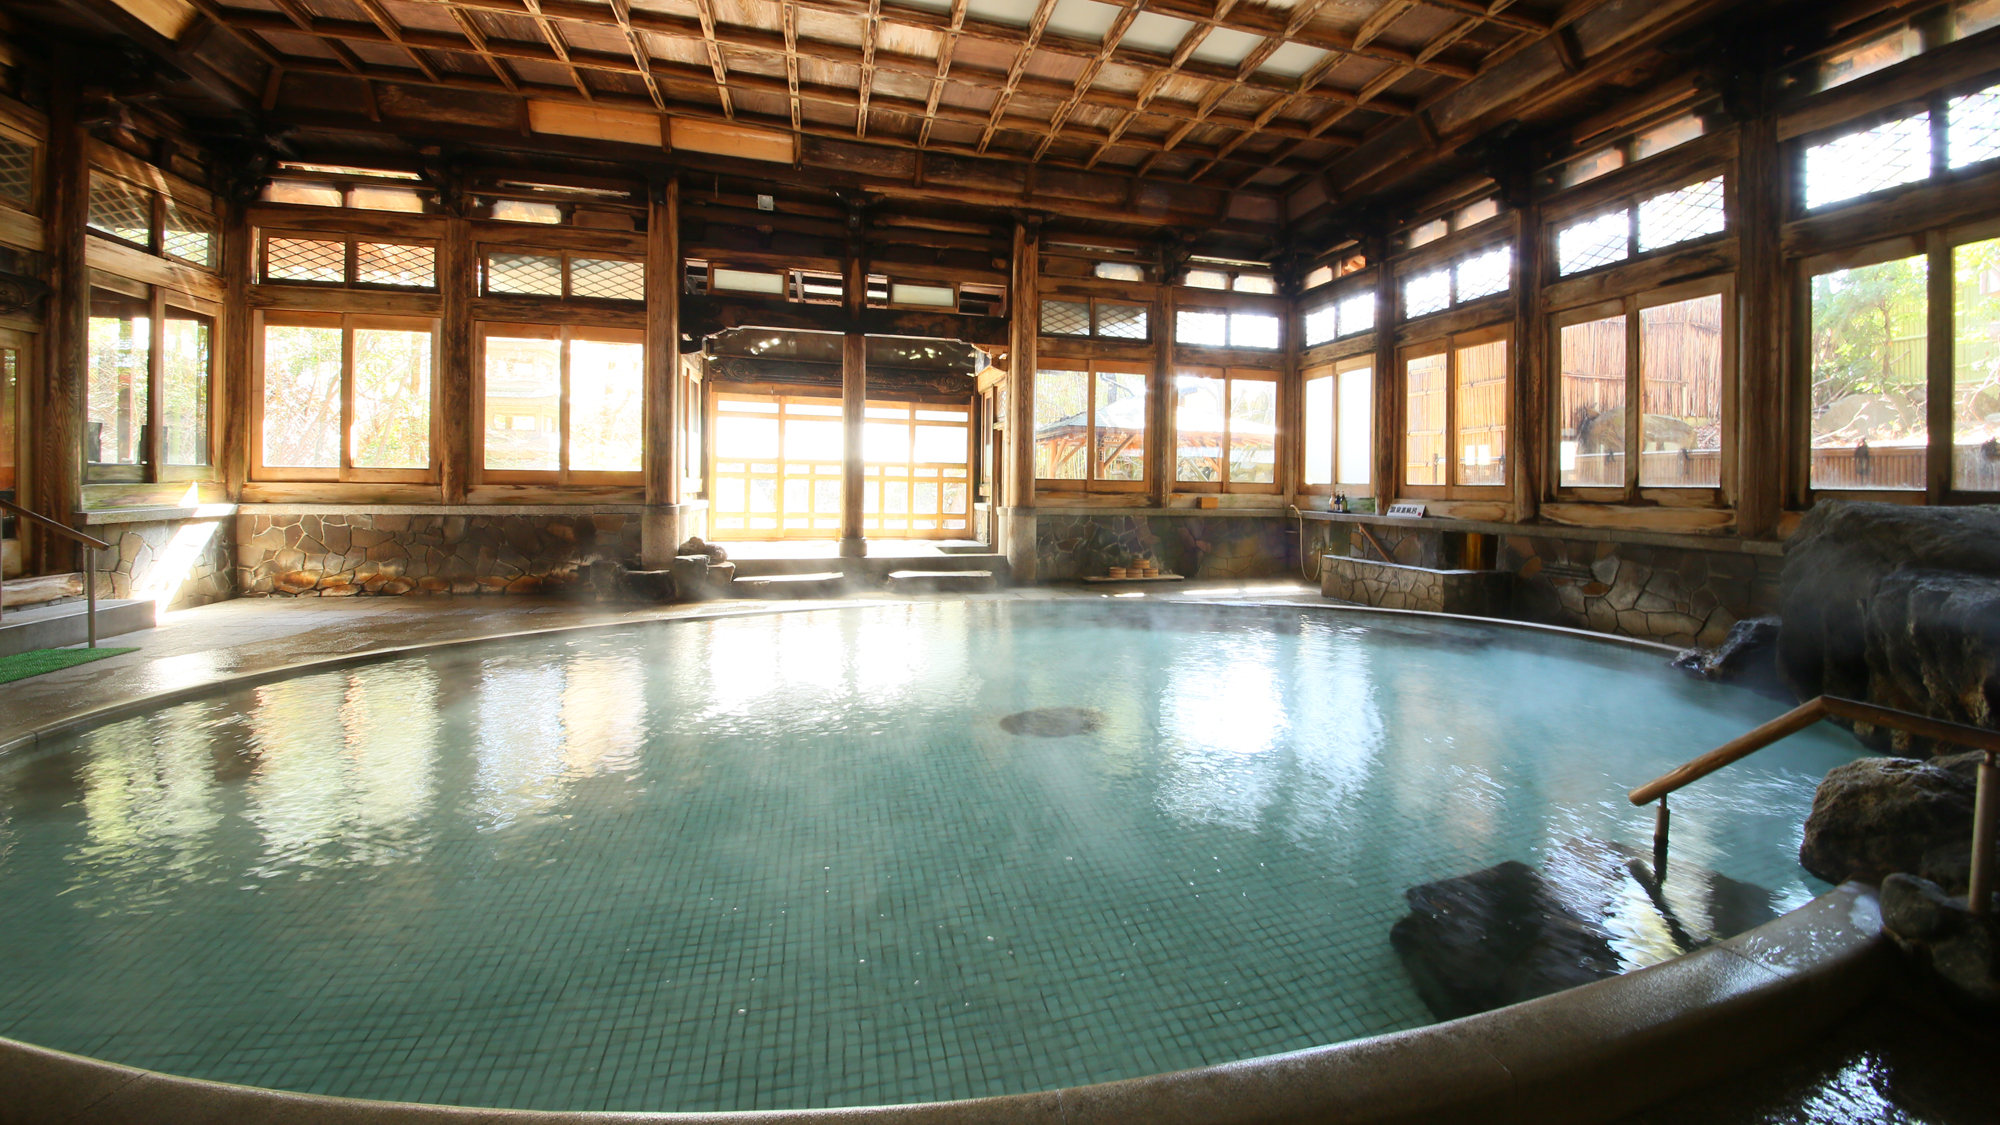 【桃山風呂】日本を代表する大浴殿・登録有形文化財。温泉蒸し風呂も併設されております。